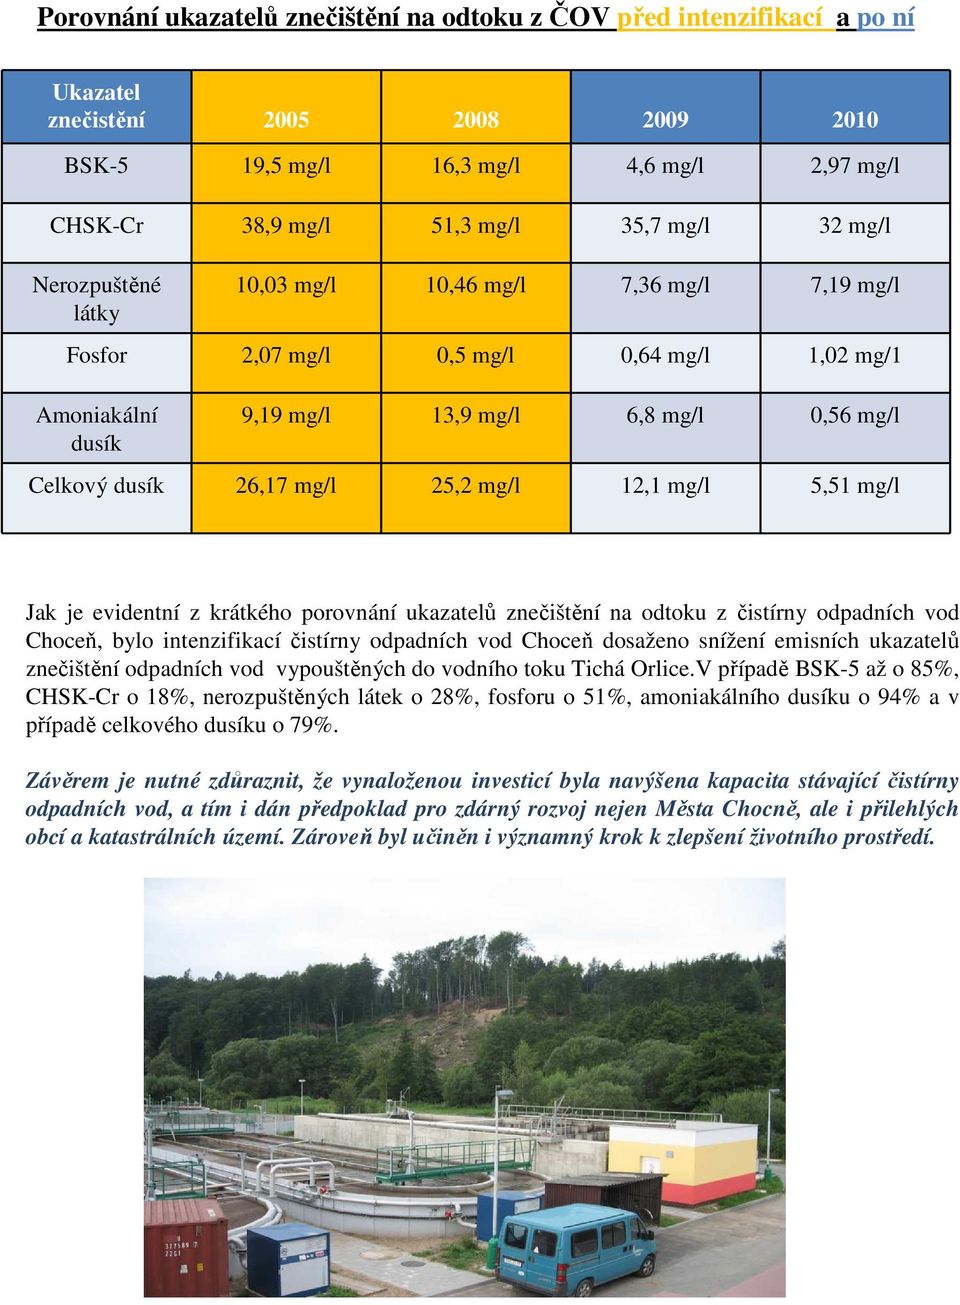 mg/l 12,1 mg/l 5,51 mg/l Jak je evidentní z krátkého porovnání ukazatelů znečištění na odtoku z čistírny odpadních vod Choceň, bylo intenzifikací čistírny odpadních vod Choceň dosaženo snížení